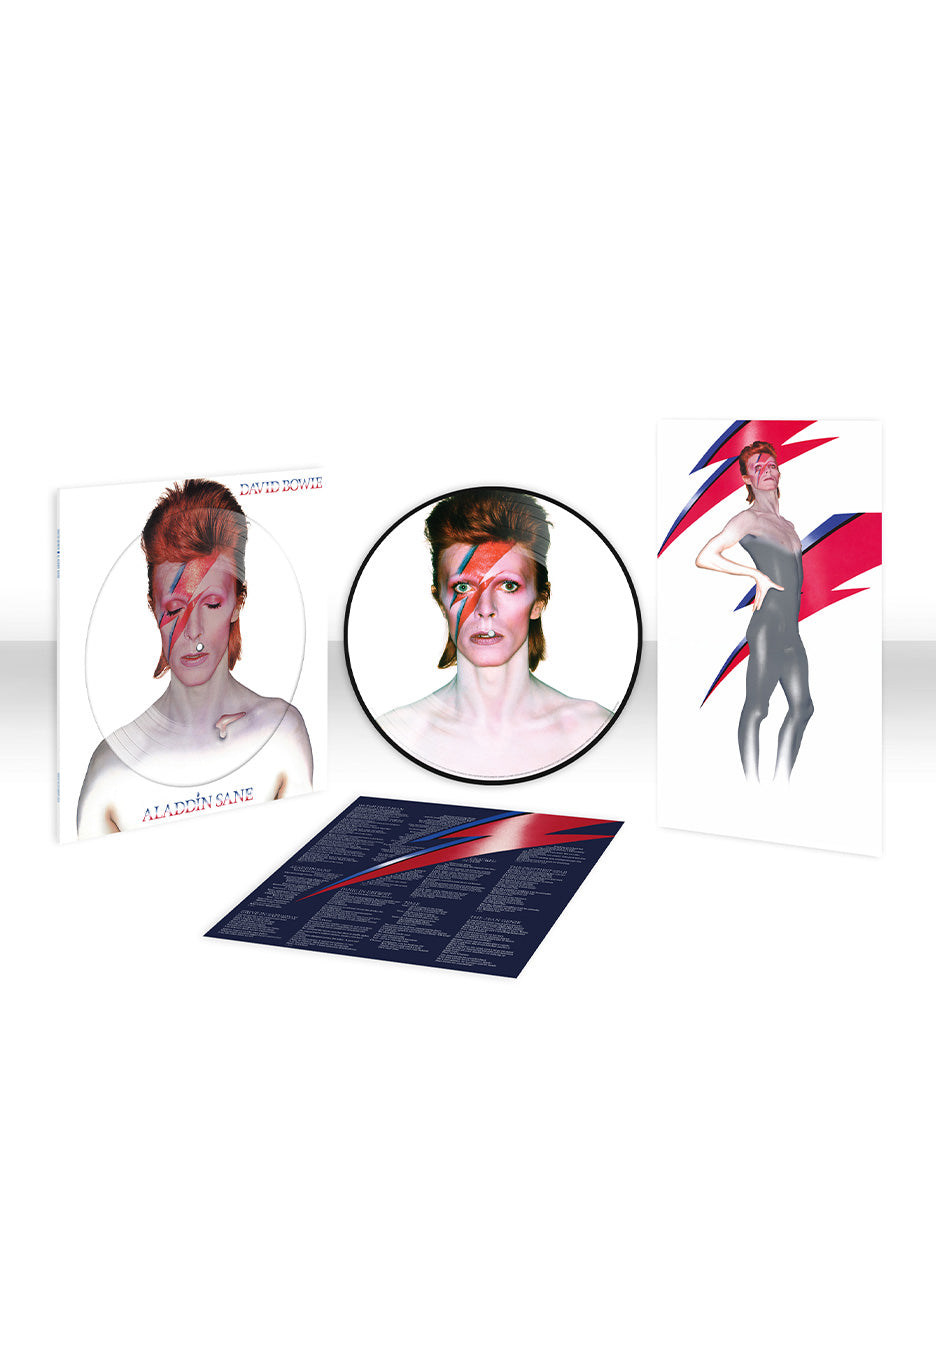 David Bowie - Aladdin Sane (50th Anniversary Half Speed Master) - Picture Vinyl | Neutral-Image